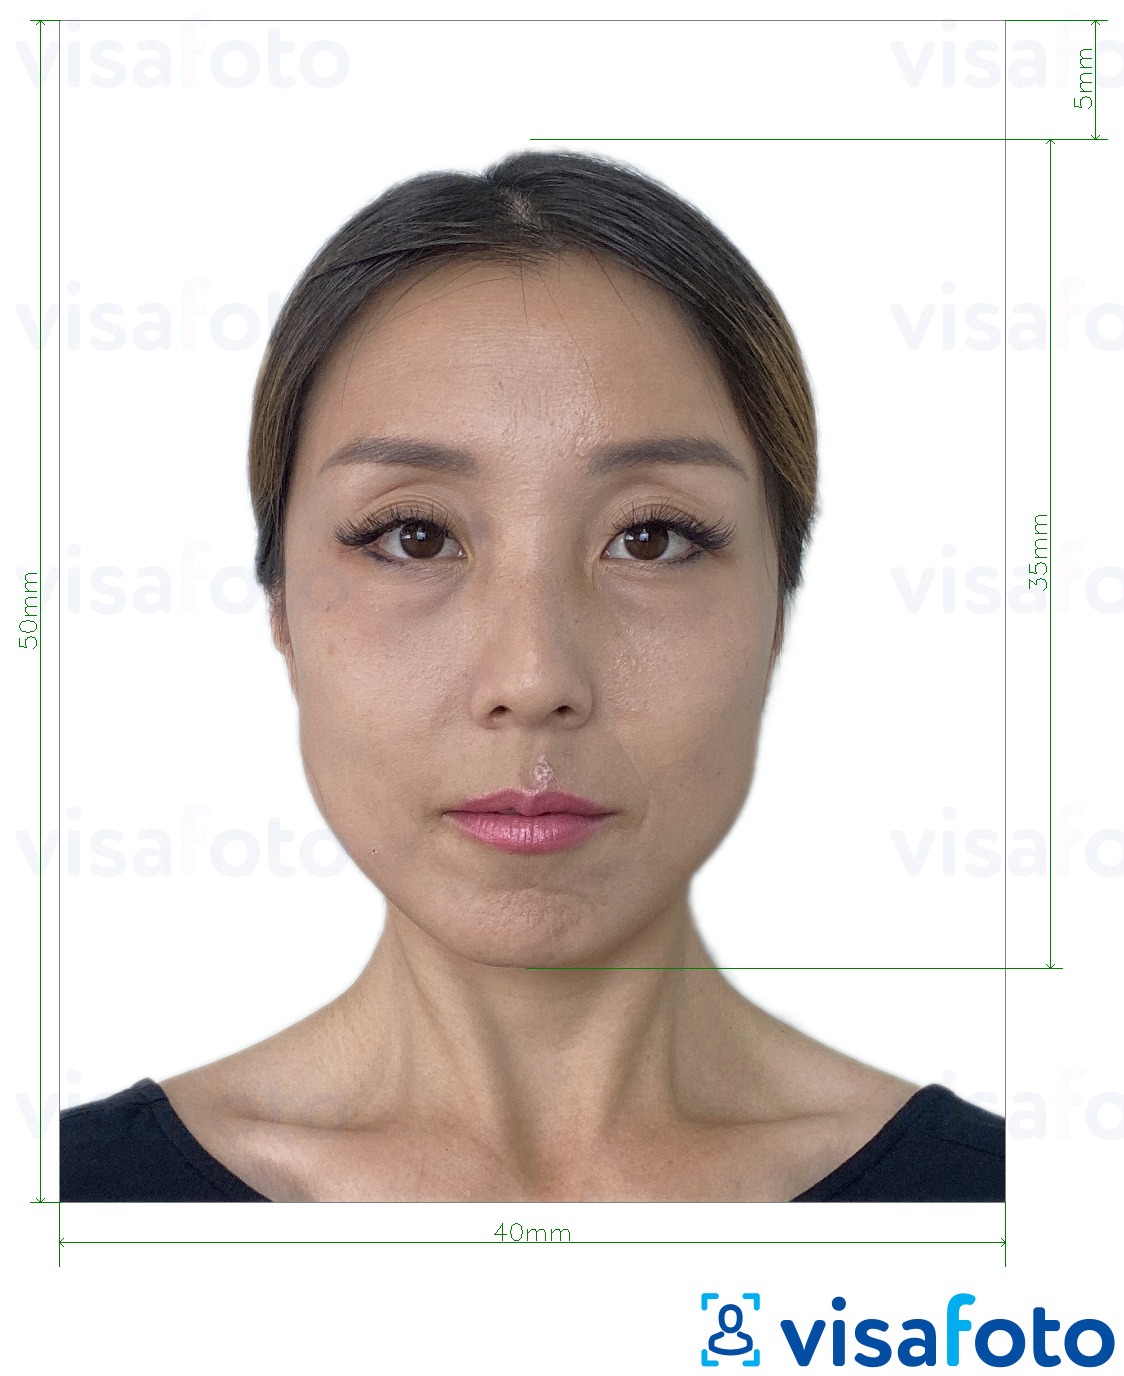 Voorbeeld van foto voor Hongkong Visa 40x50 mm (4x5 cm) met exacte maatspecificatie